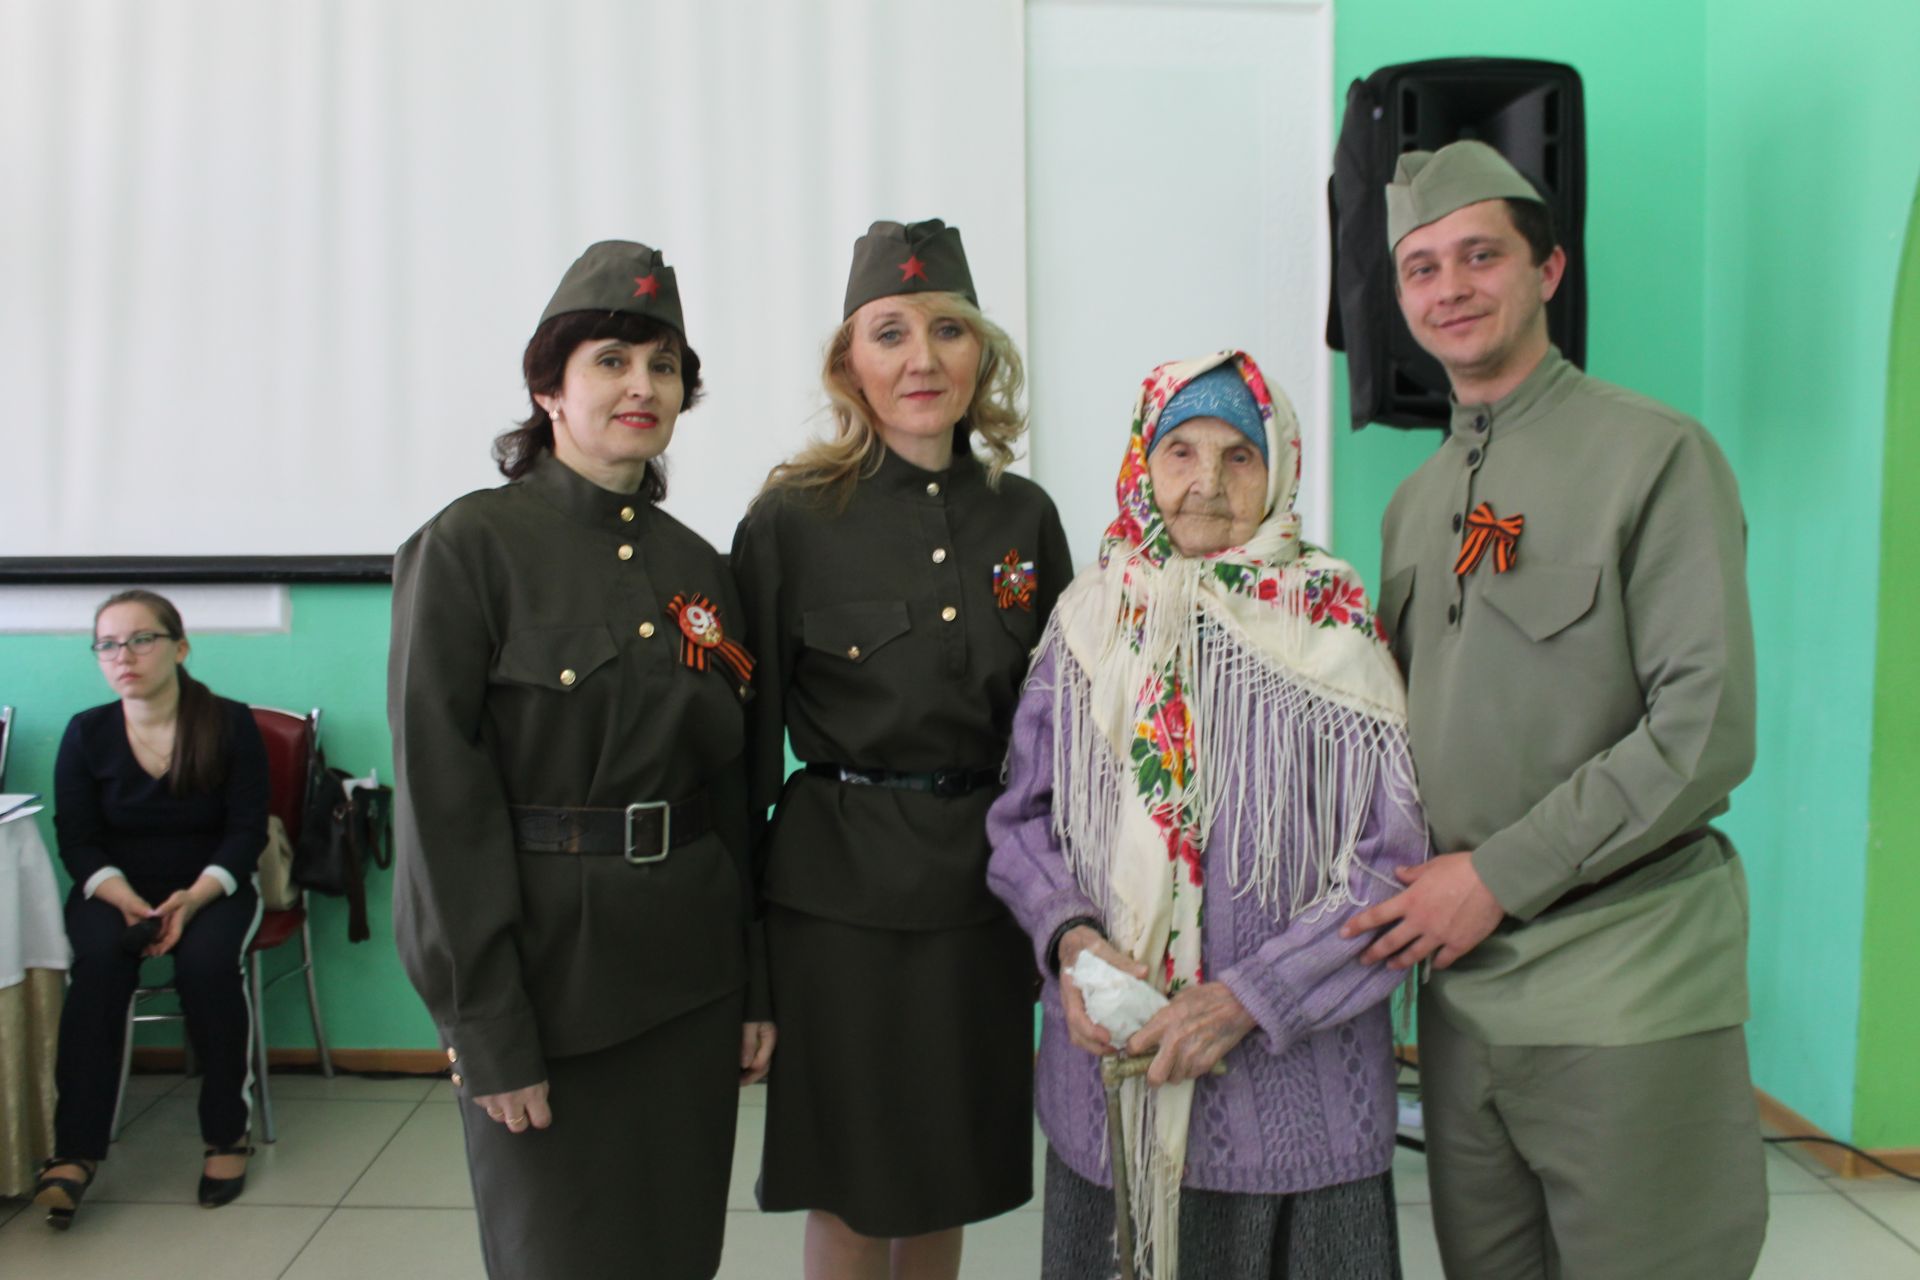 Ветеранам Мамадышского района ко Дню Победы организовали праздничный обед